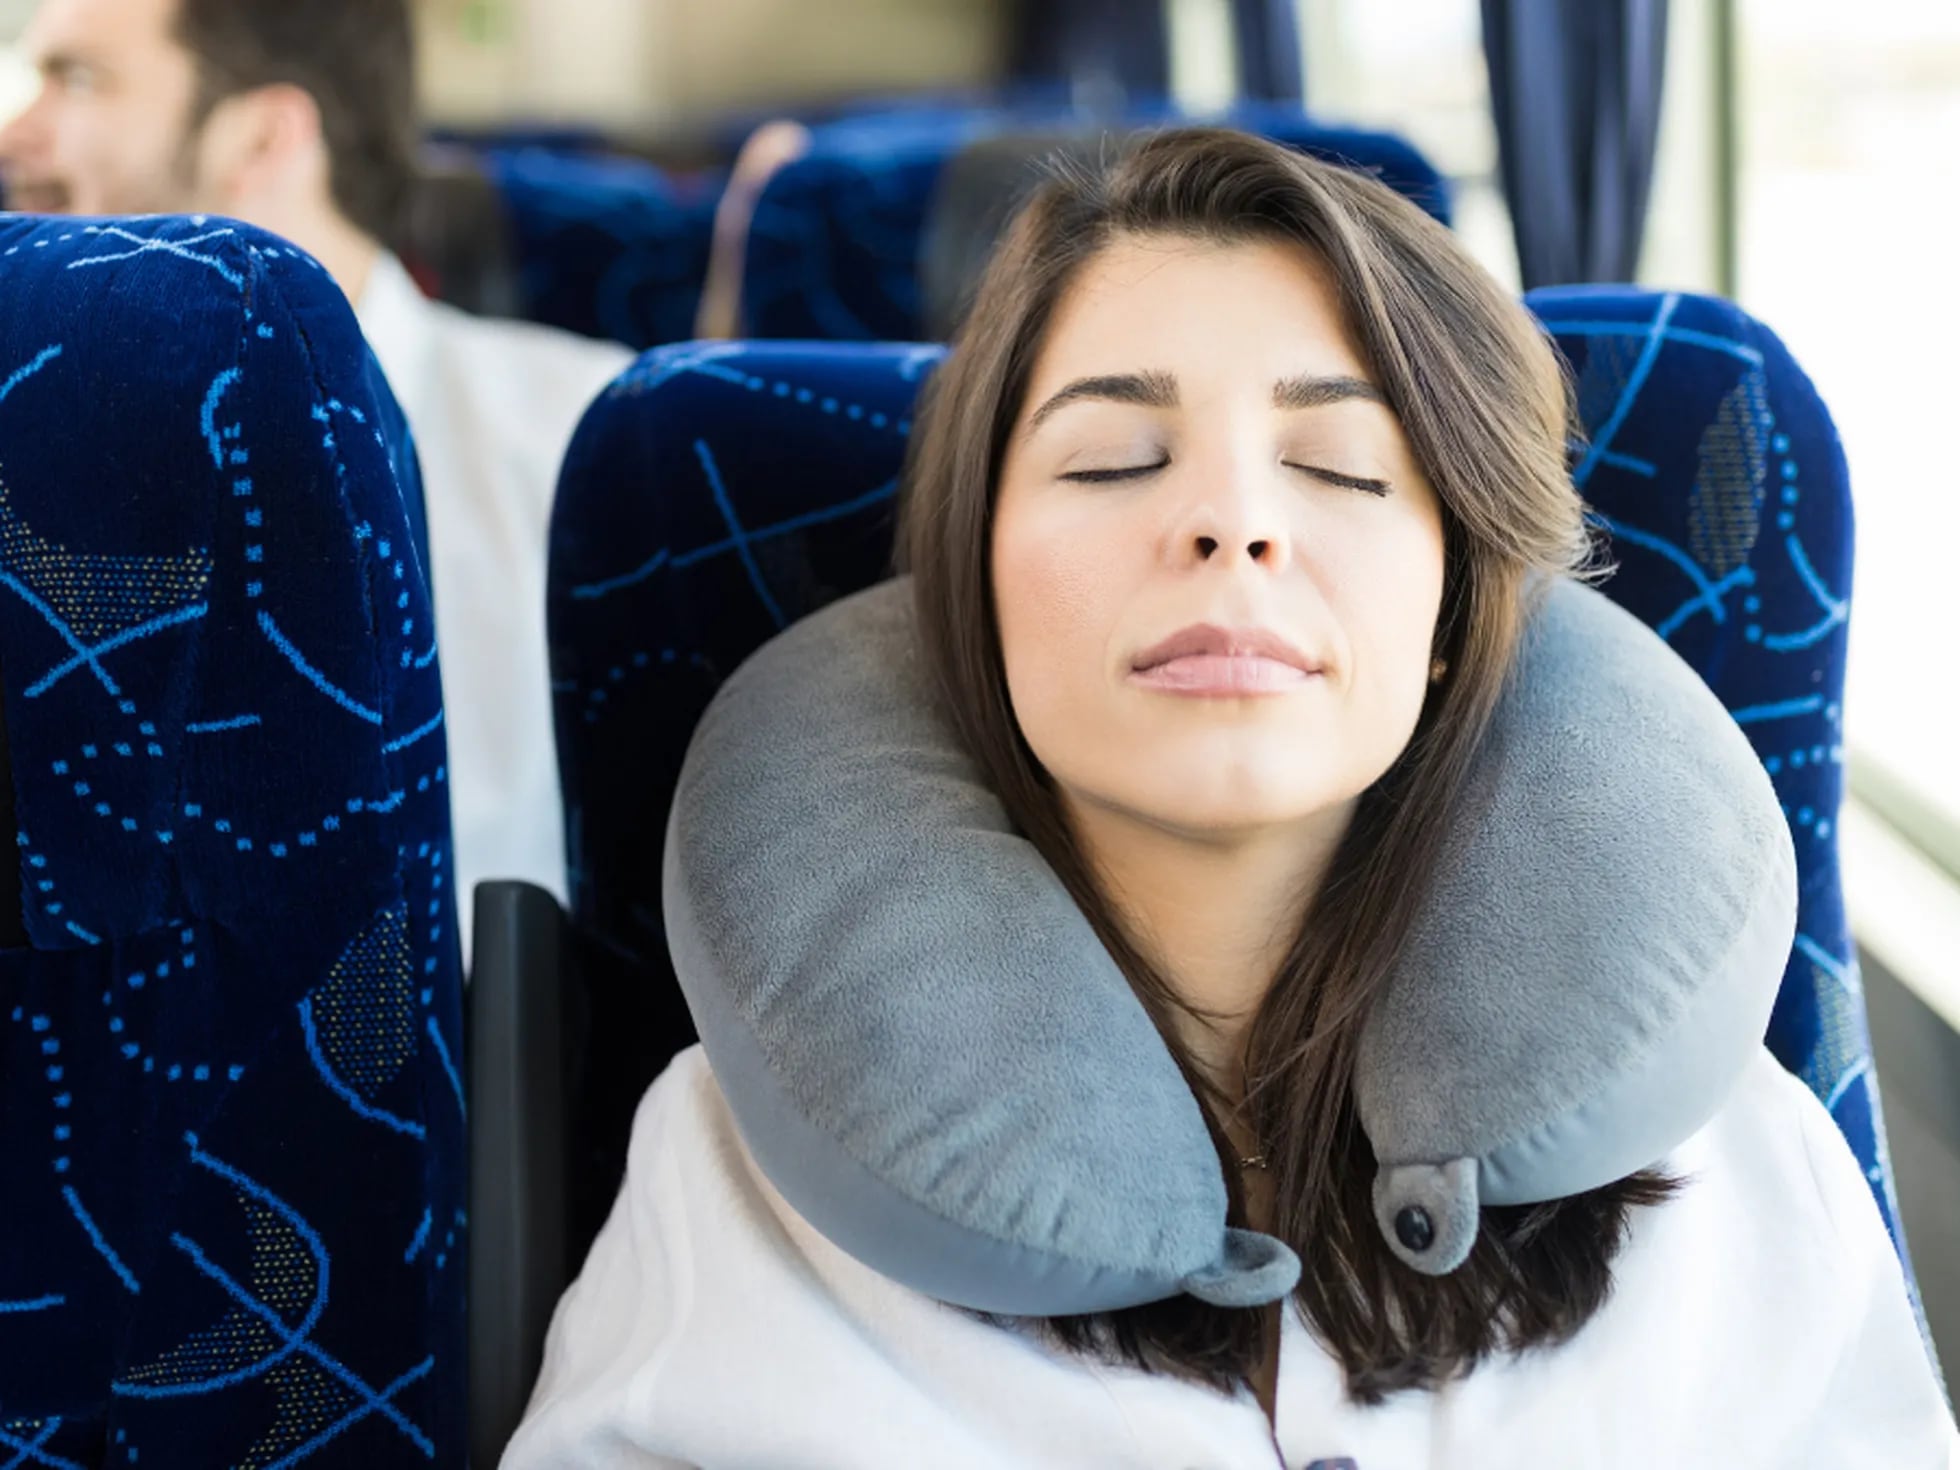 Bigote Desacuerdo terremoto Las mejores almohadas de viaje | Escaparate | EL PAÍS